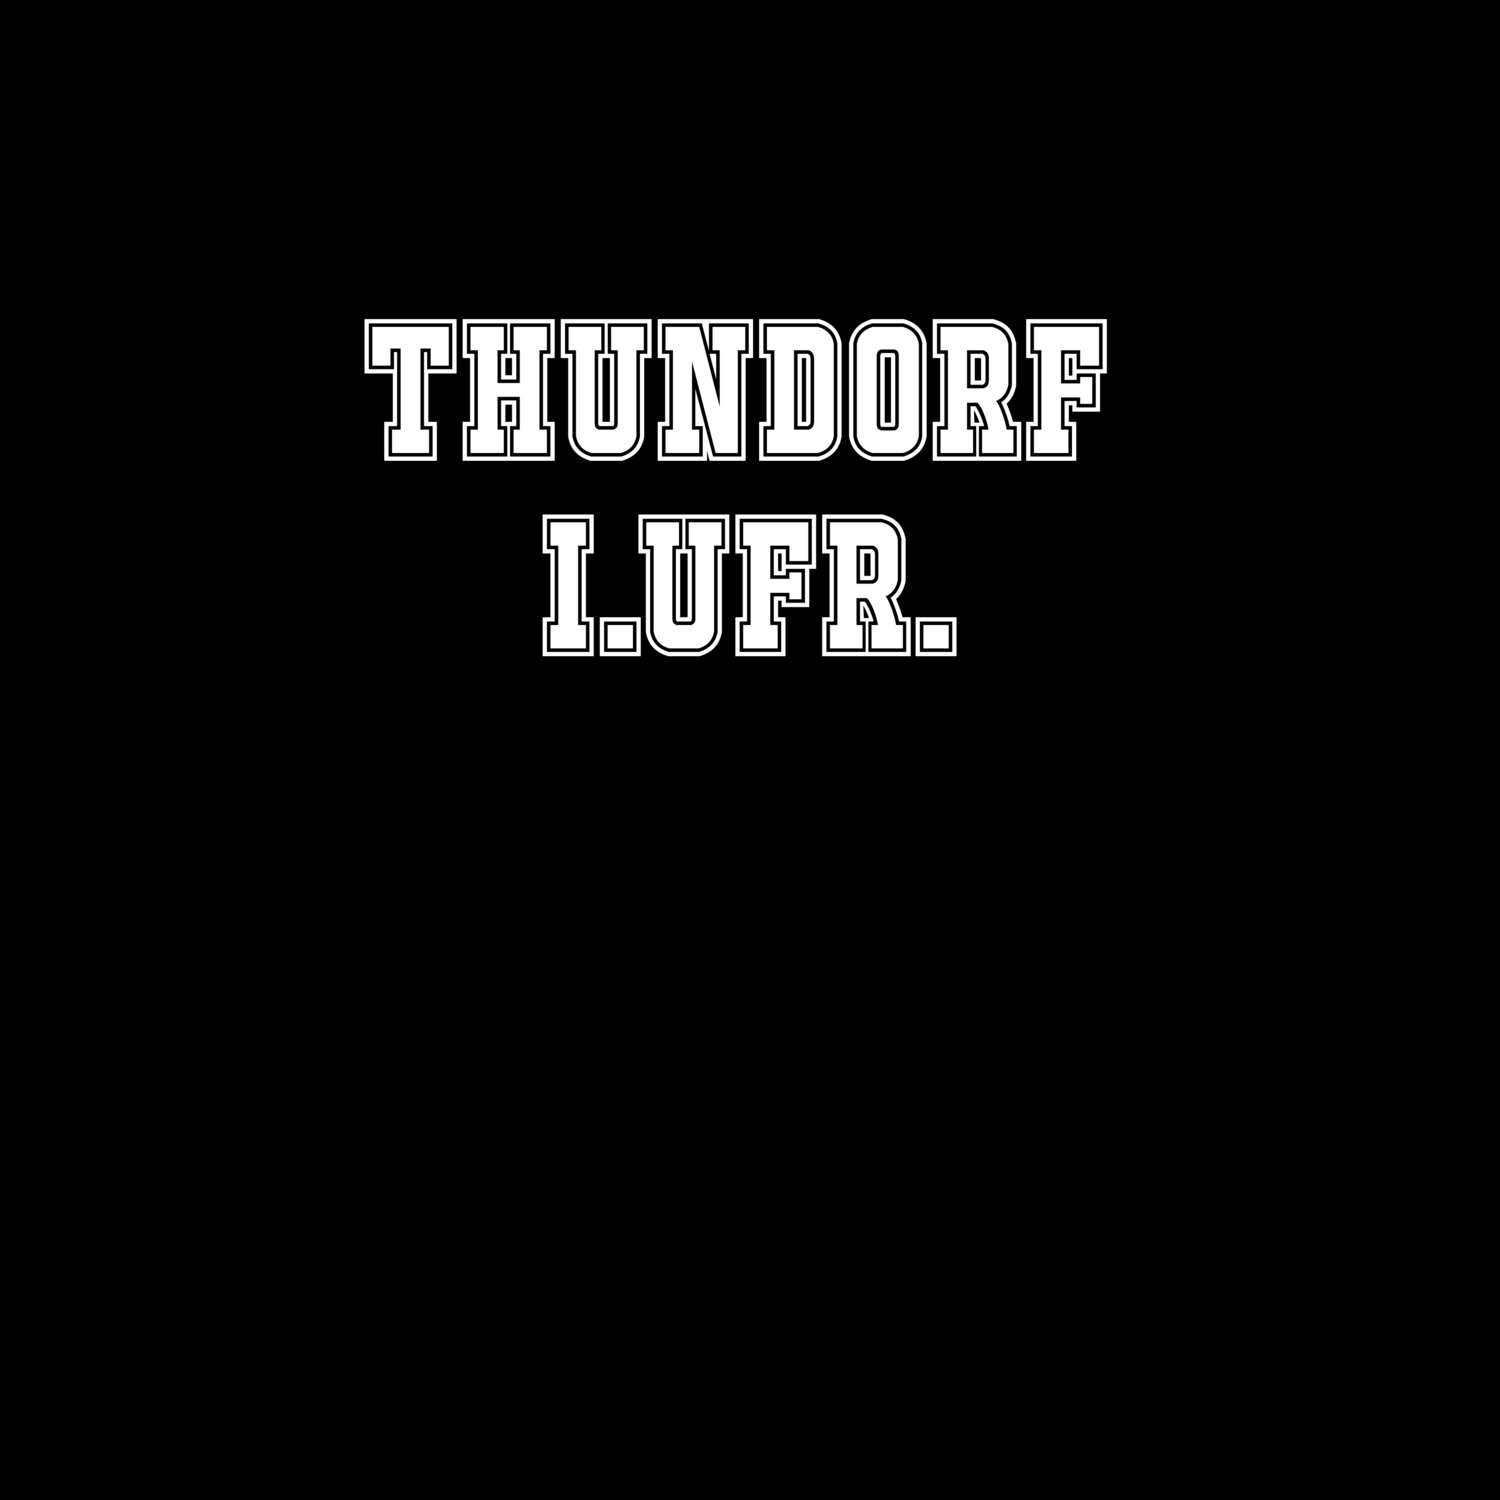 Thundorf i.UFr. T-Shirt »Classic«